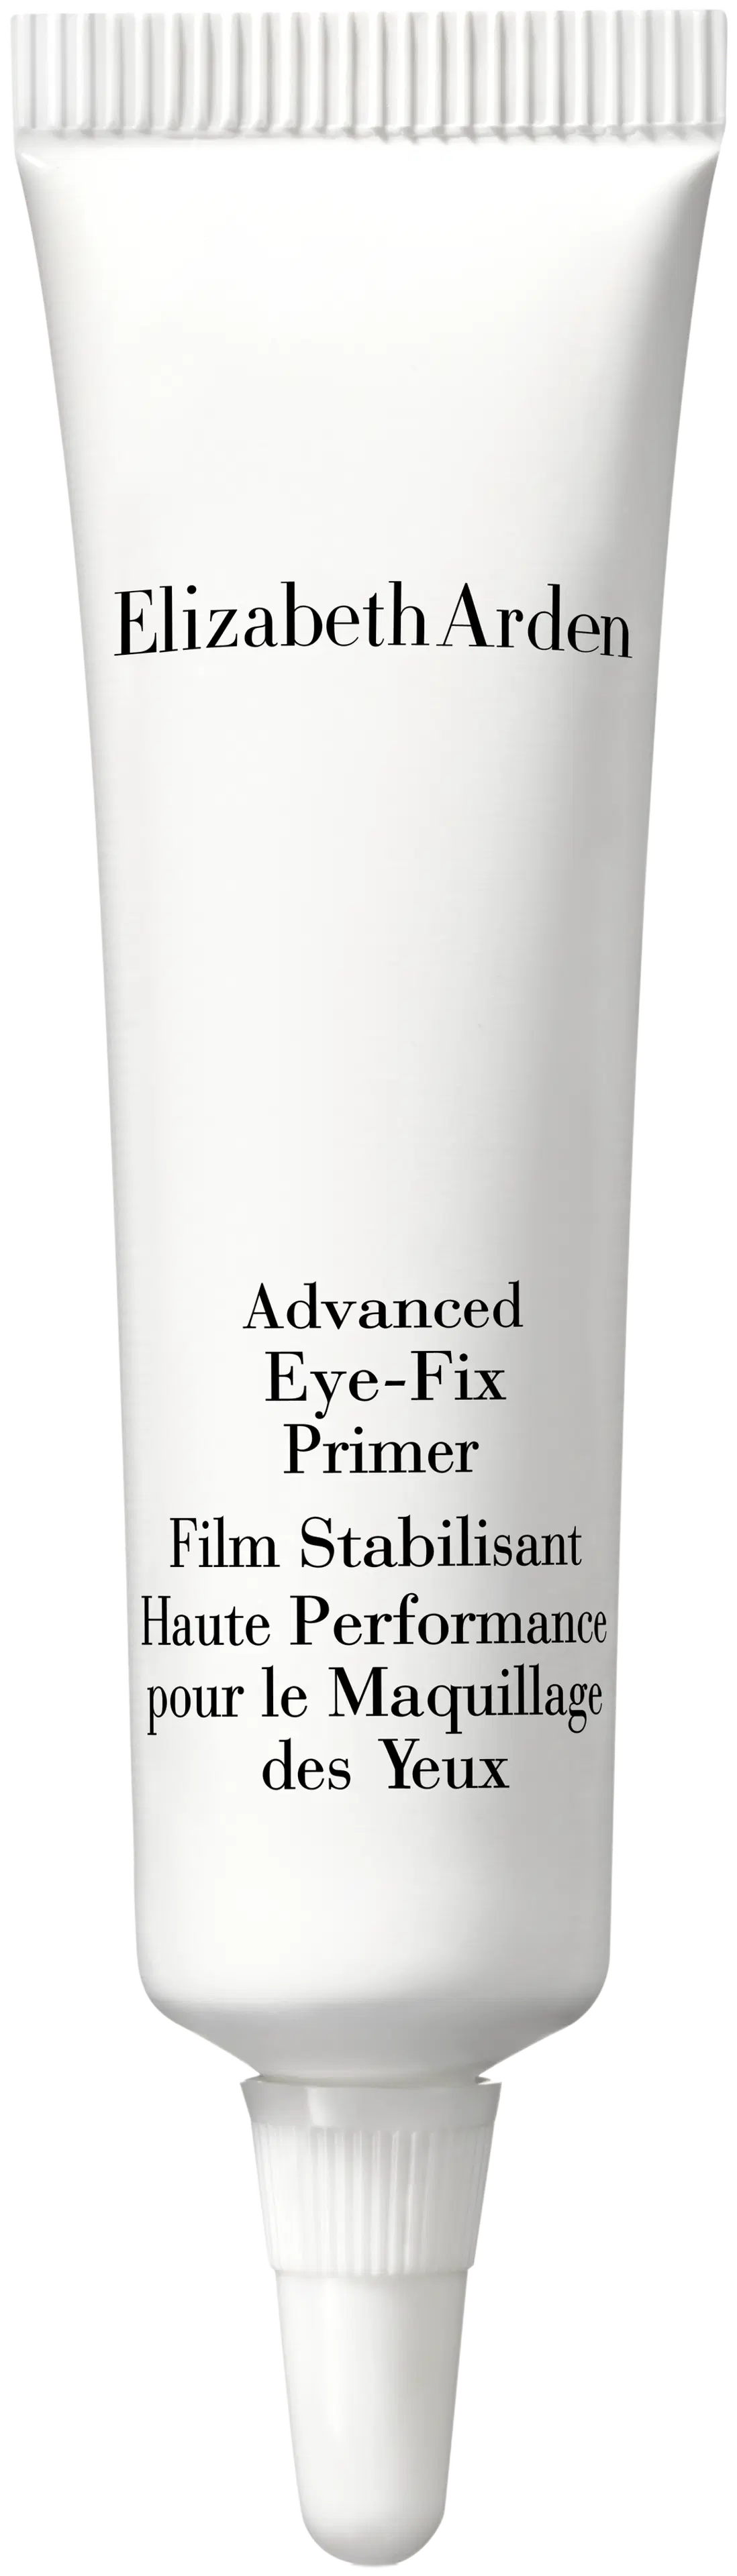 Elizabeth Arden Advanced eye fix primer Silmämeikin pohjustustuote 7.5 g